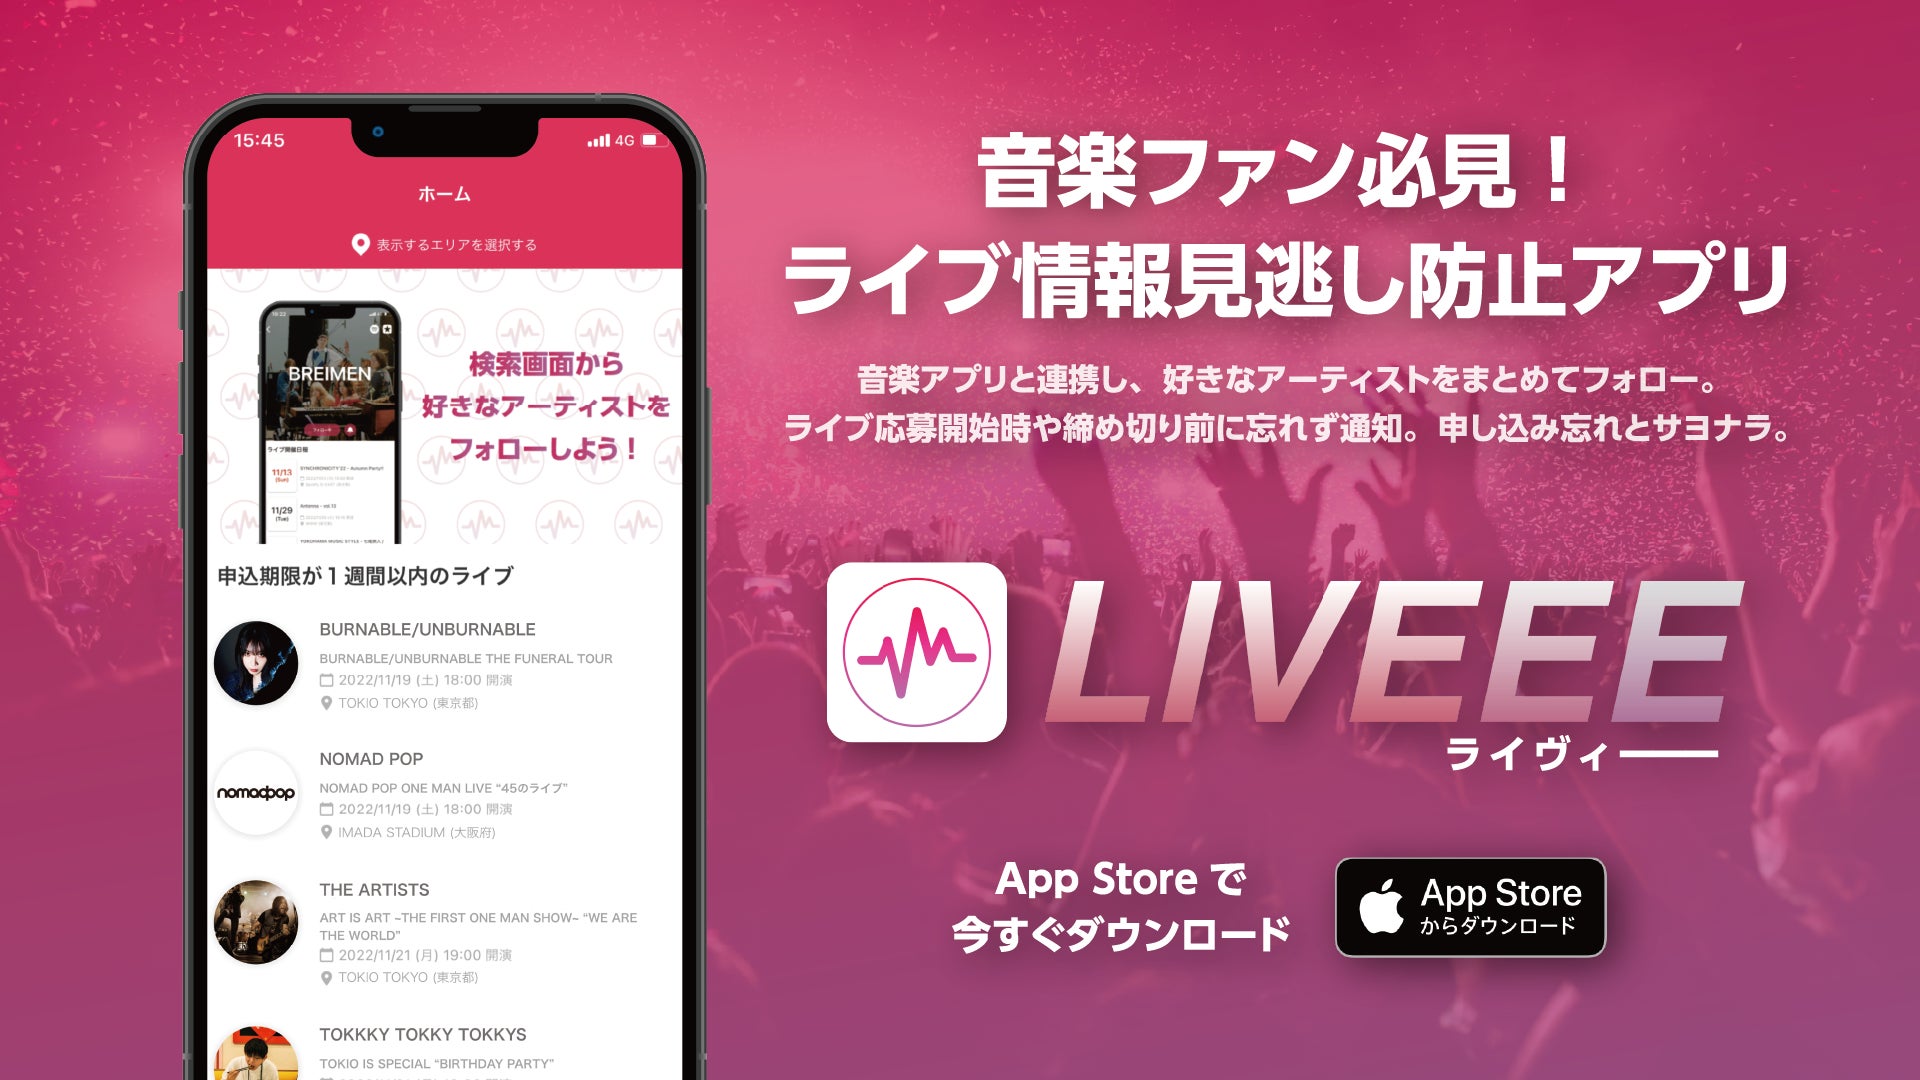 渋谷のライブハウス「TOKIO TOKYO」を運営するHYPE が新サービス『LIVEEE』を発表